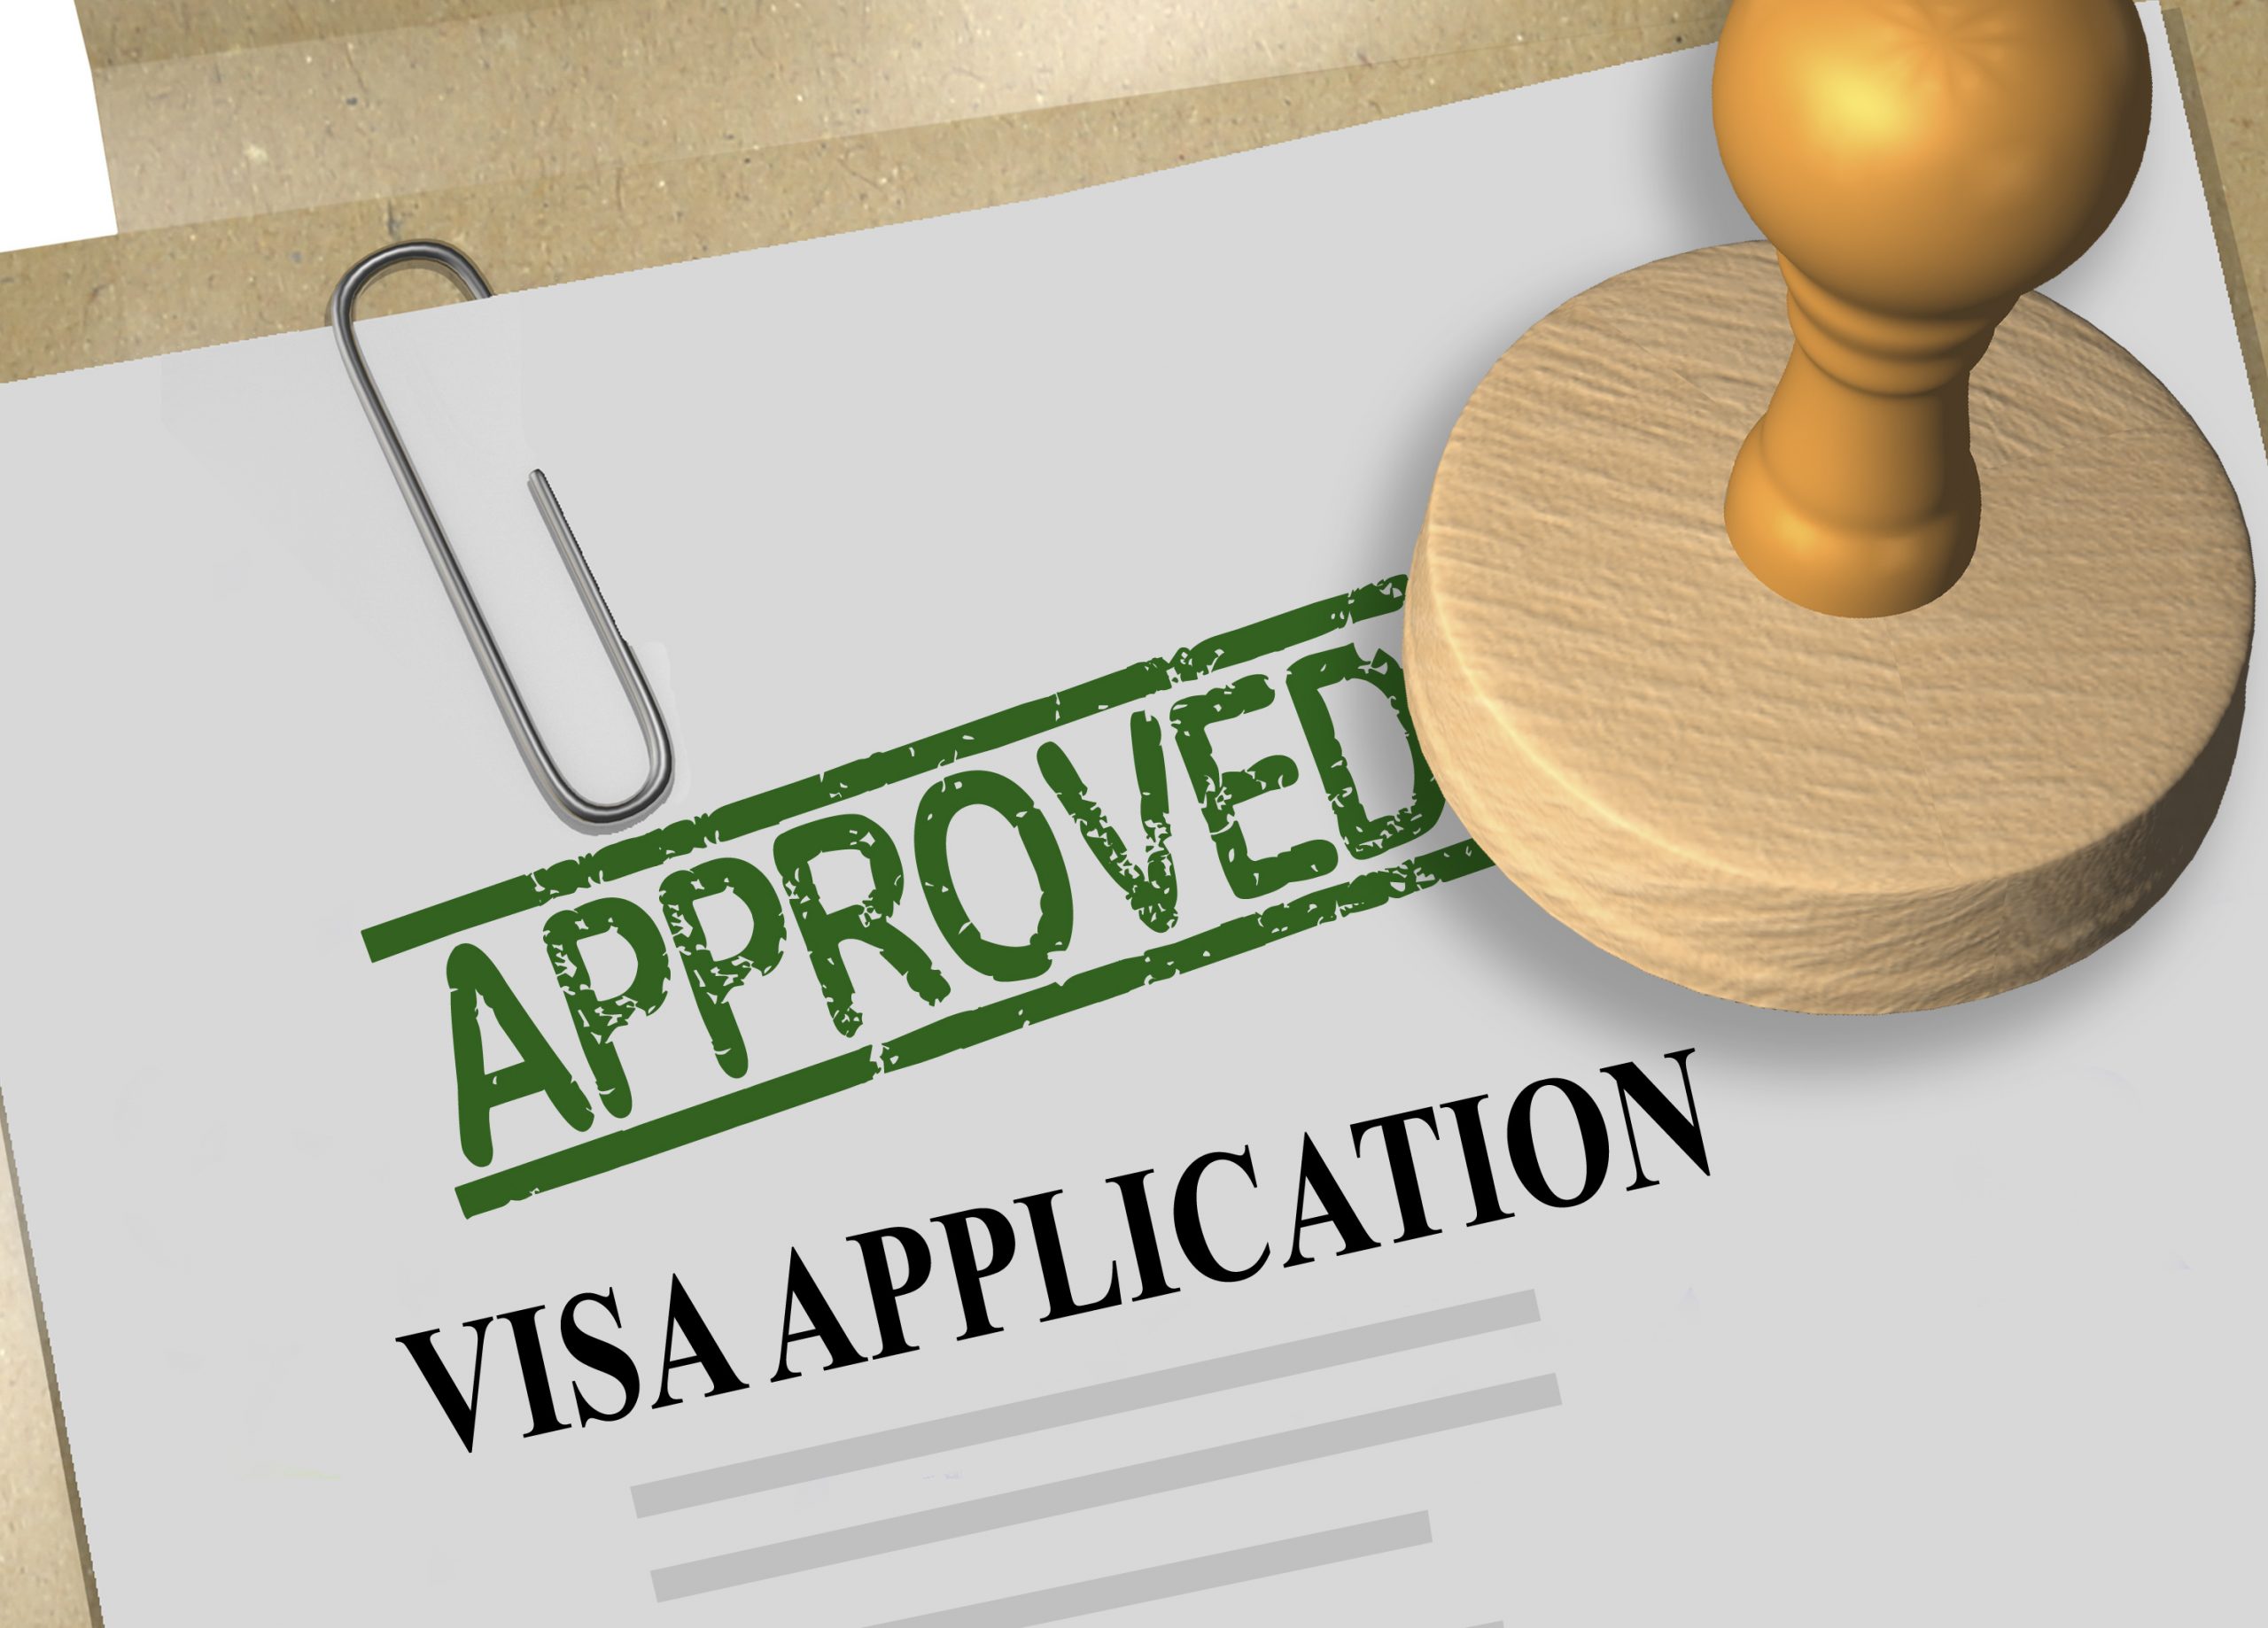 3D illustration of APPROVED stamp title on visa application form